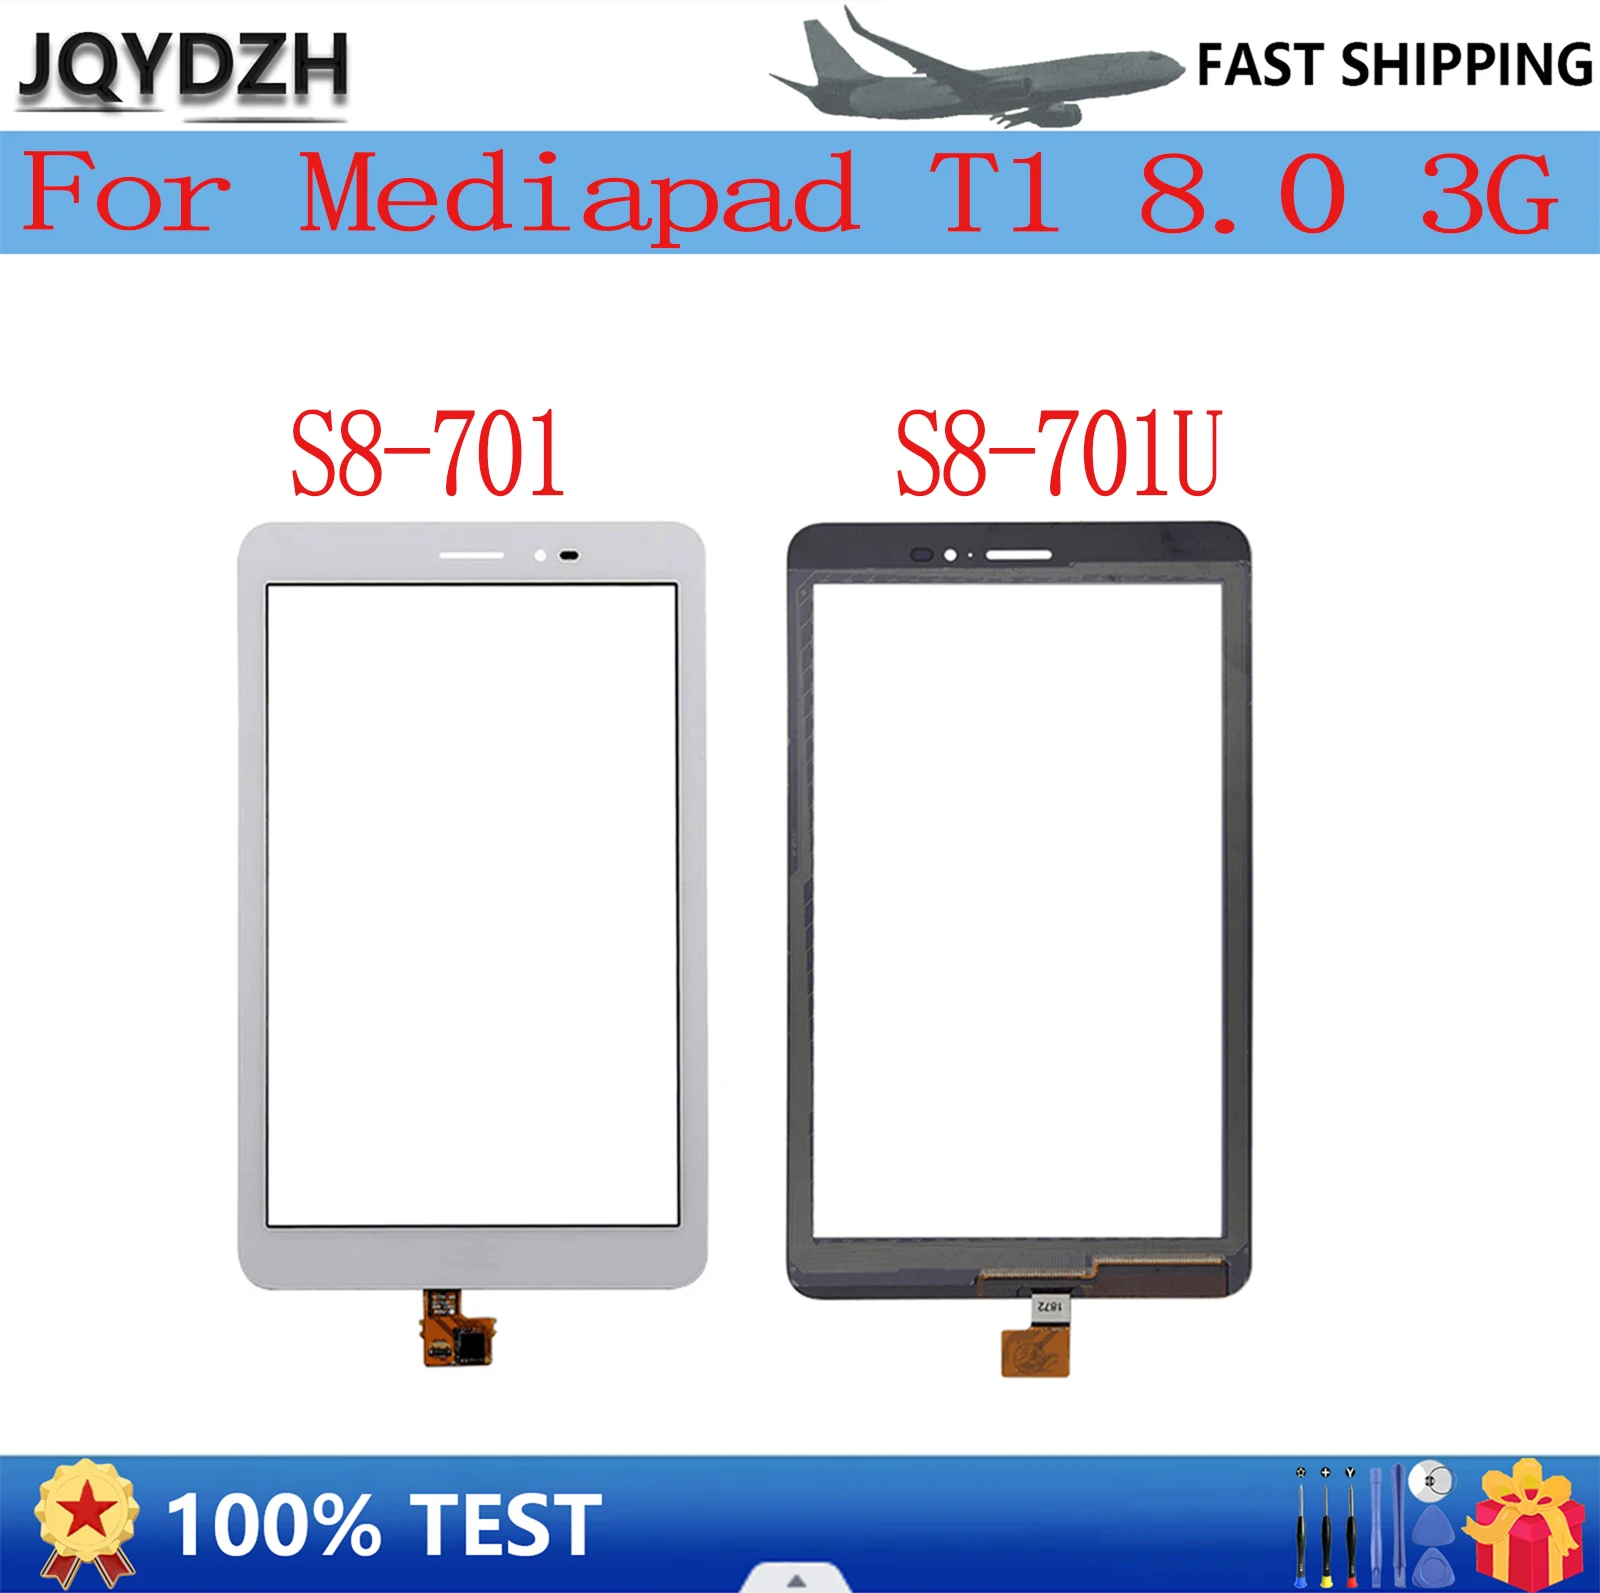 JQYDZH для Mediapad T1 8.0 3G S8-701u Honor Pad T1 S8-701 сенсорный стеклянный внешний экран 100% тест